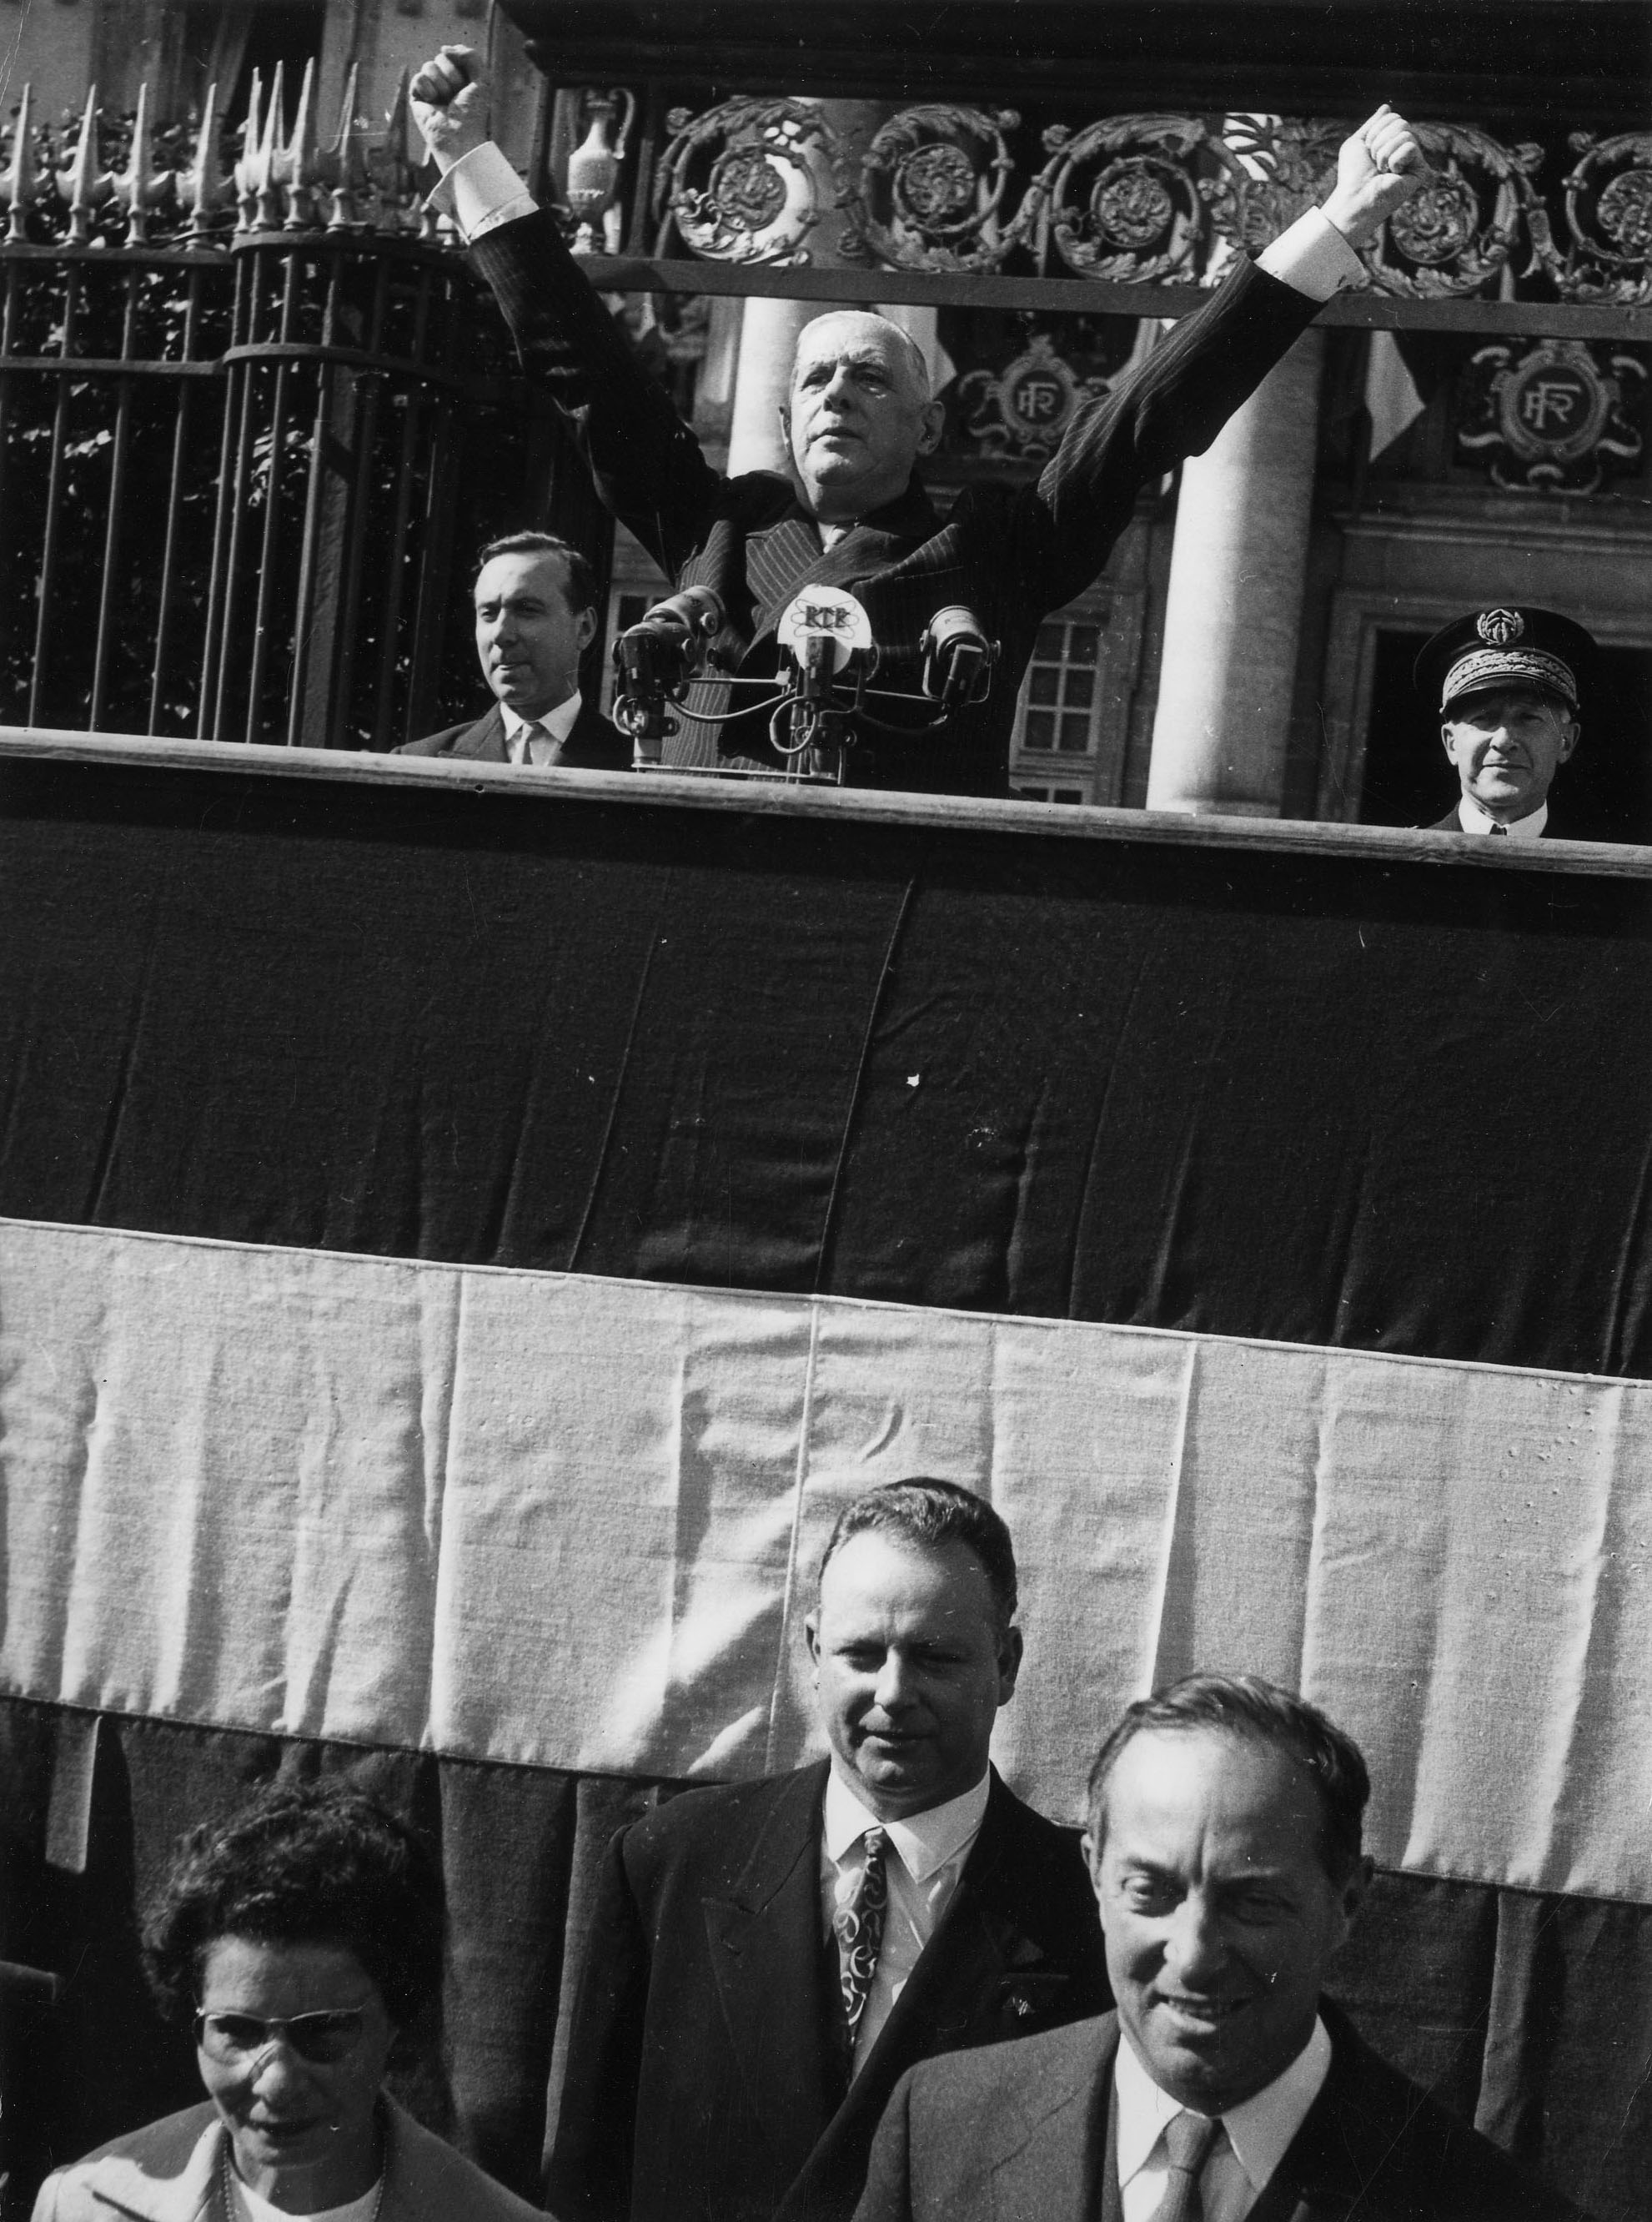 Le général de Gaulle, bras levés lors de son discours à la tribune de la préfecture, le 10 septembre 1960. Derrière lui, Michel Debré, Premier ministre, et Pierre Trouillé, préfet de Loire-Atlantique. Au pied de la tribune Nafissa Sid Cara, secrétaire d'état (79Z12 - Fonds Régis Routier)